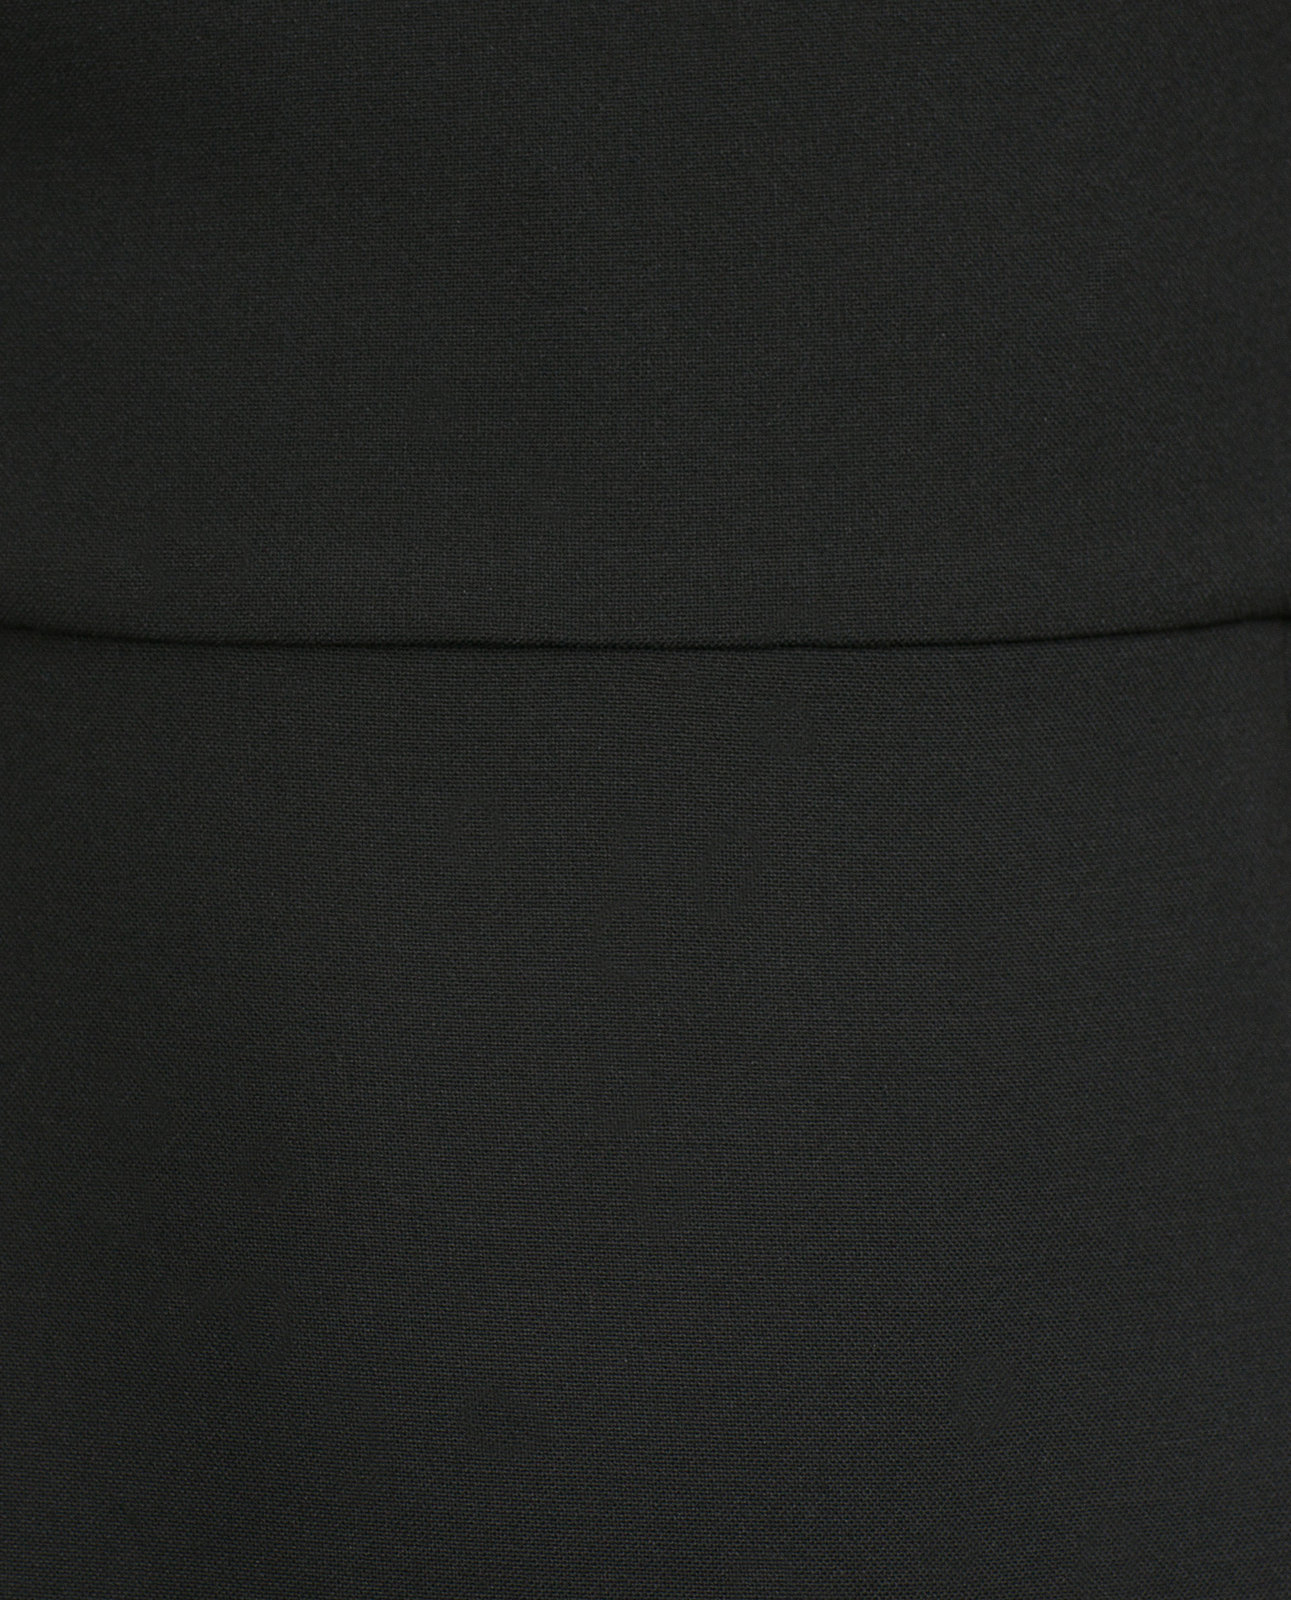 Zara hosszú fekete csőruha 2015.10.16 #88738 fotója